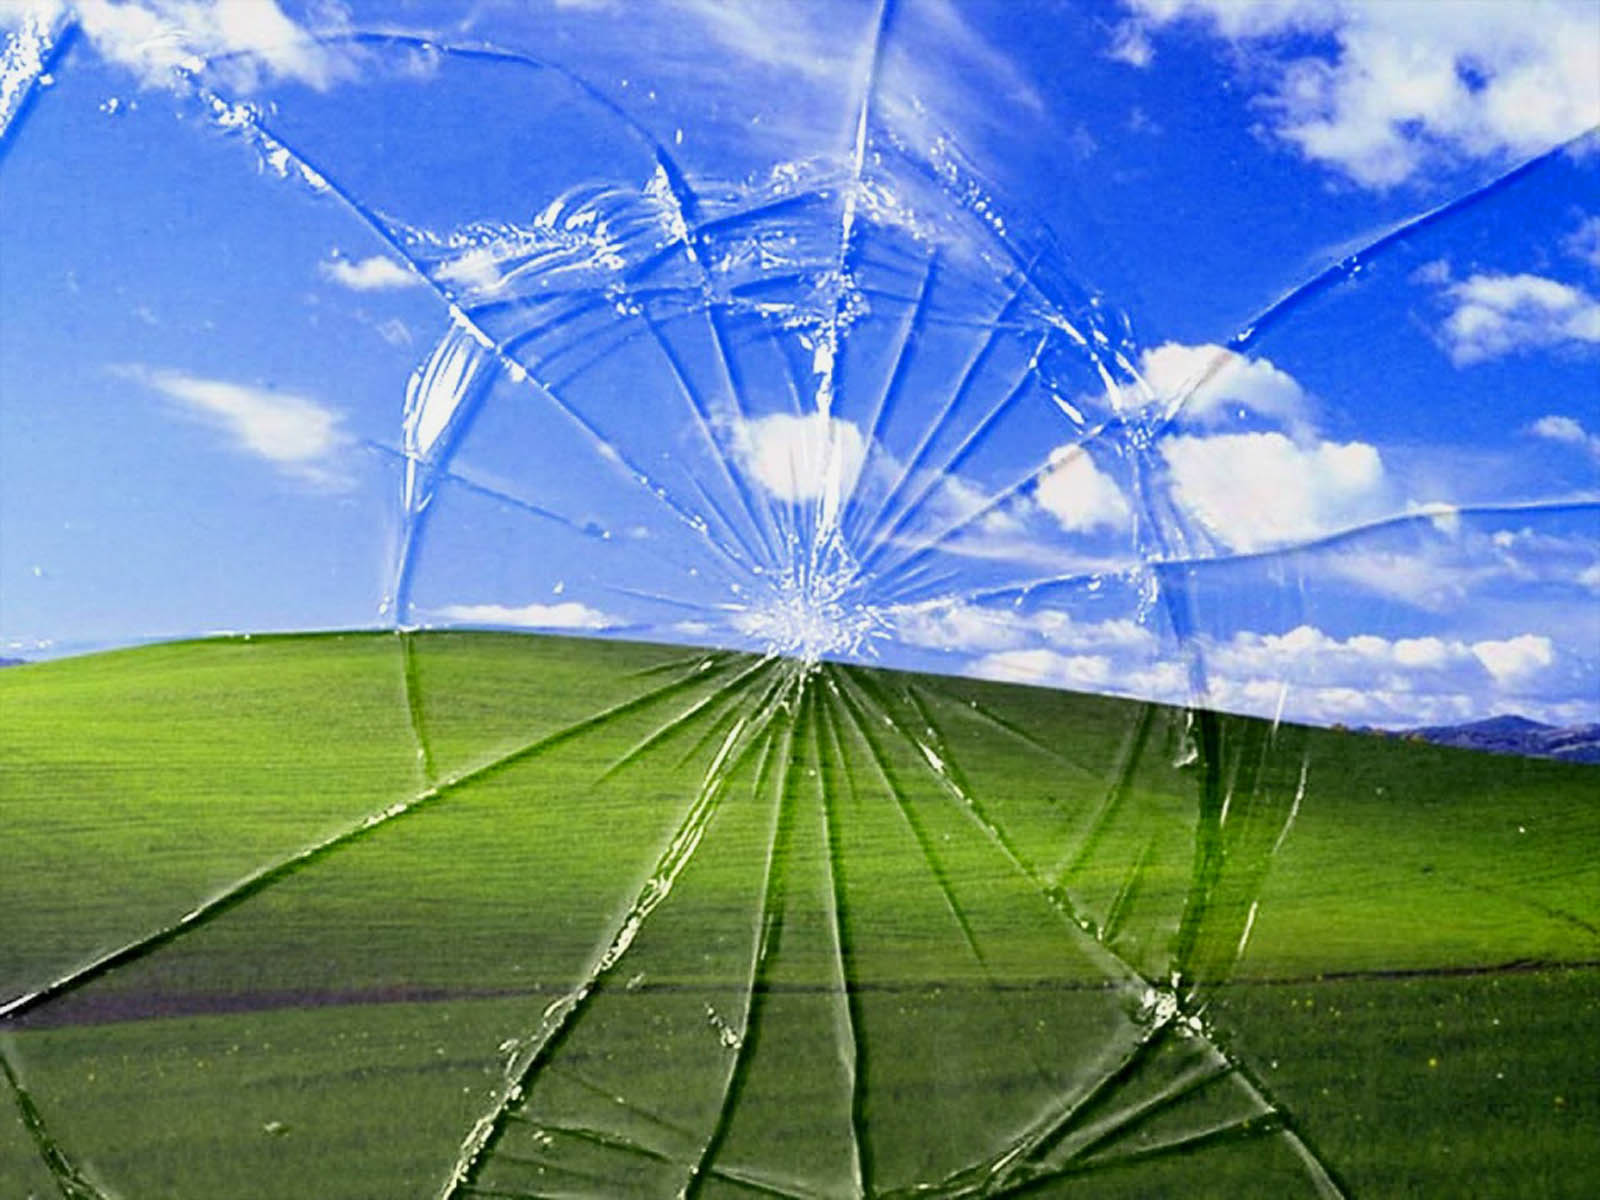 Windows Broken Glass Wallpapers: Bộ sưu tập hình nền Windows Broken Glass là một sự lựa chọn tuyệt vời cho những người yêu thích sự độc đáo và nghệ thuật. Những bức hình này mang đến vẻ đẹp huyền bí và hiện đại, khiến cho màn hình của bạn trở nên ấn tượng và thu hút người dùng.